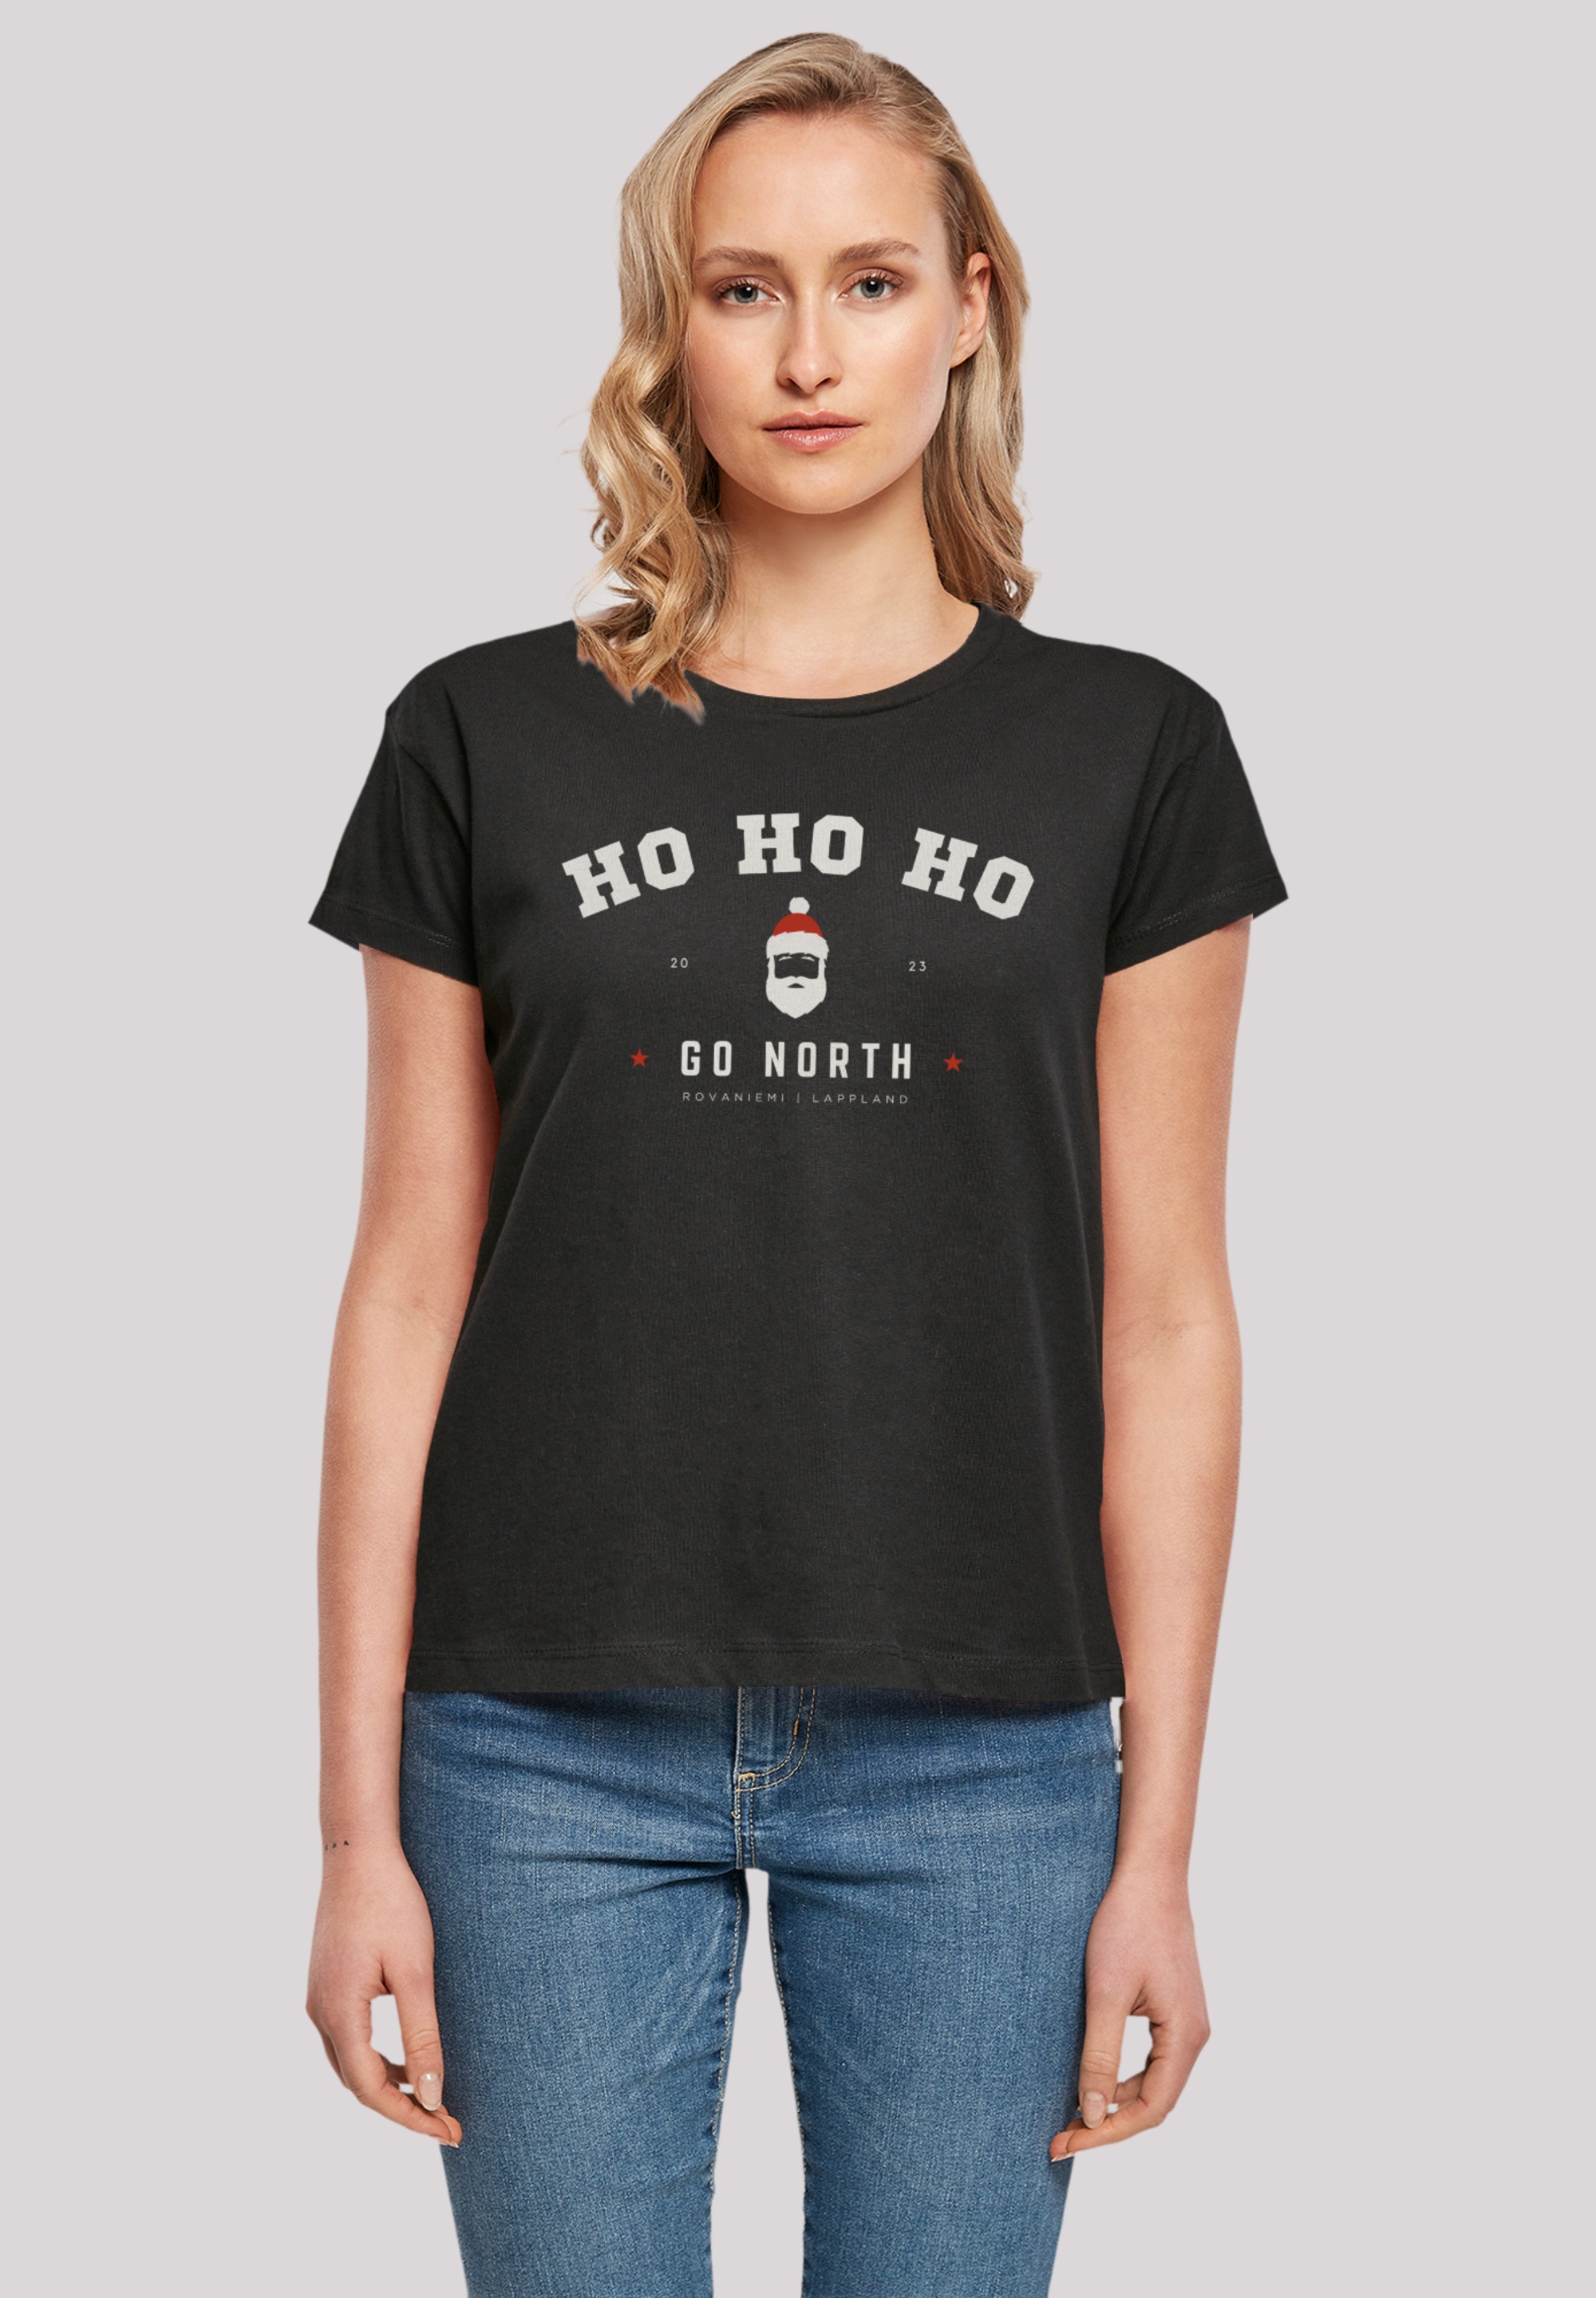 | kaufen Weihnachten«, Ho Logo T-Shirt Santa F4NT4STIC walking Geschenk, »Ho Ho Claus Weihnachten, I\'m online